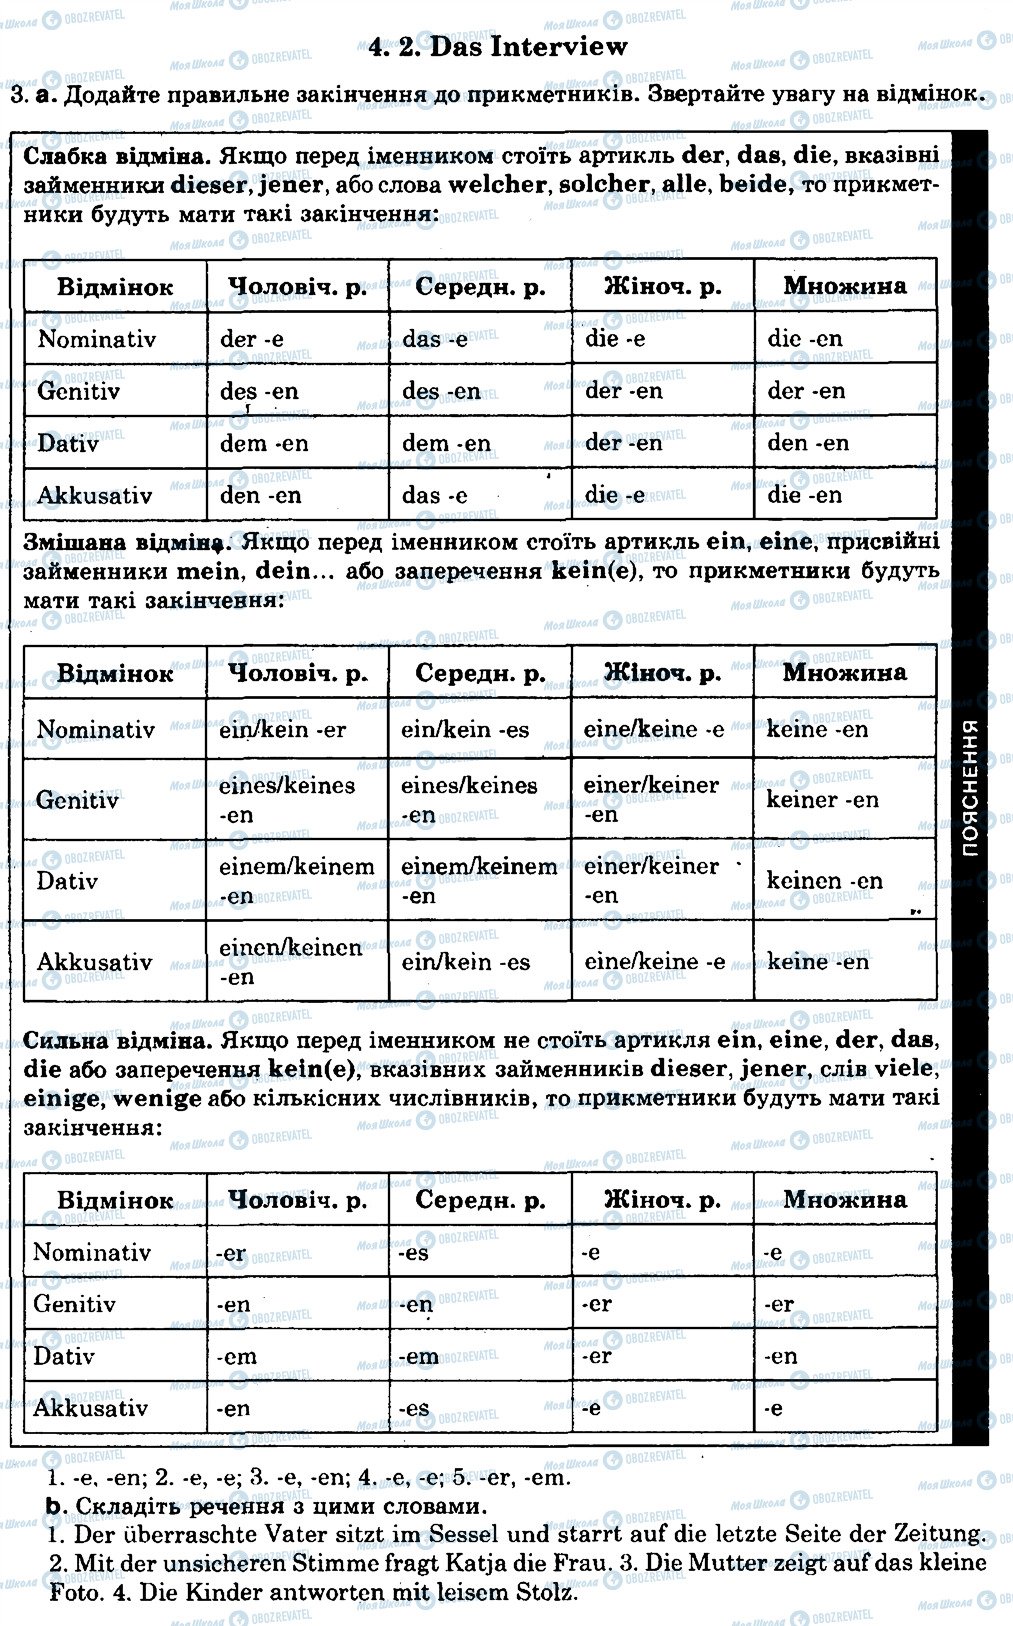 ГДЗ Немецкий язык 8 класс страница 4.2